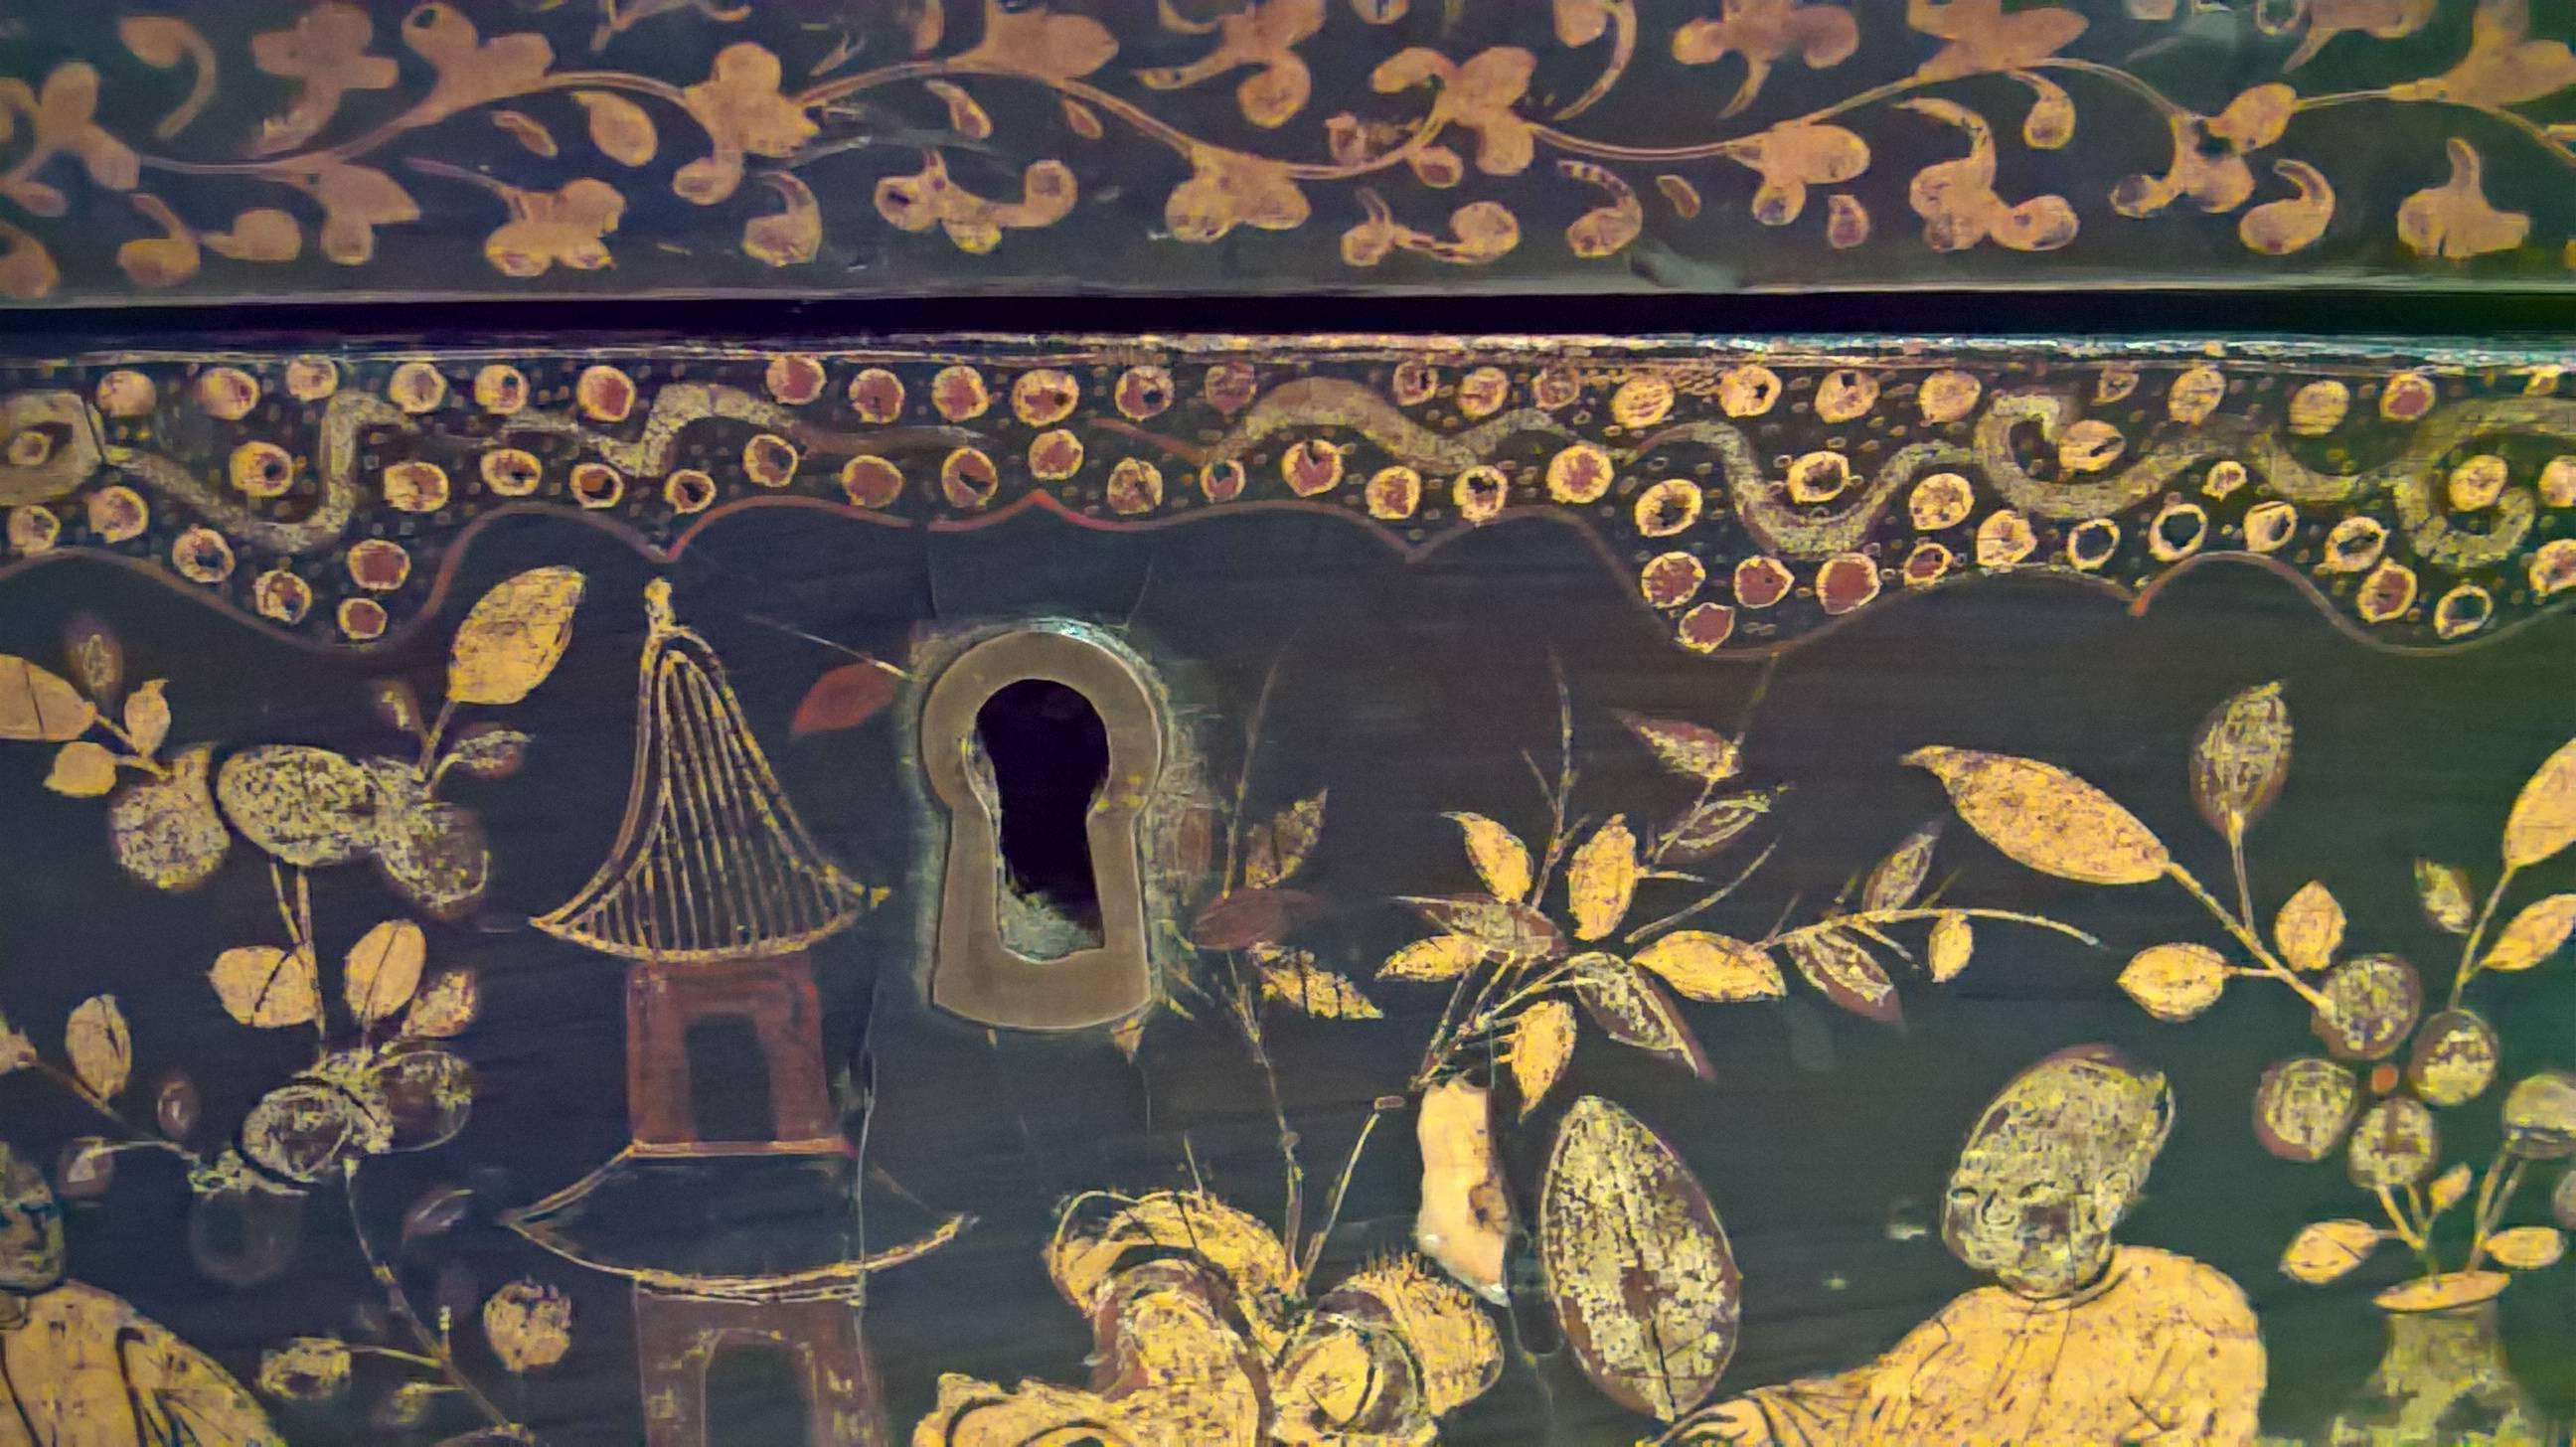 Truhe aus schwarzem Holz mit Chinoiserie-Allover in Gold. truhe aus dem 19. Jahrhundert und handgefertigt in England. Innen schwarz lackiert. Außen insgesamt mit pastoralen Chinoiserie-Szenen in Gold verziert. Steht auf vier Klauen in Holz.